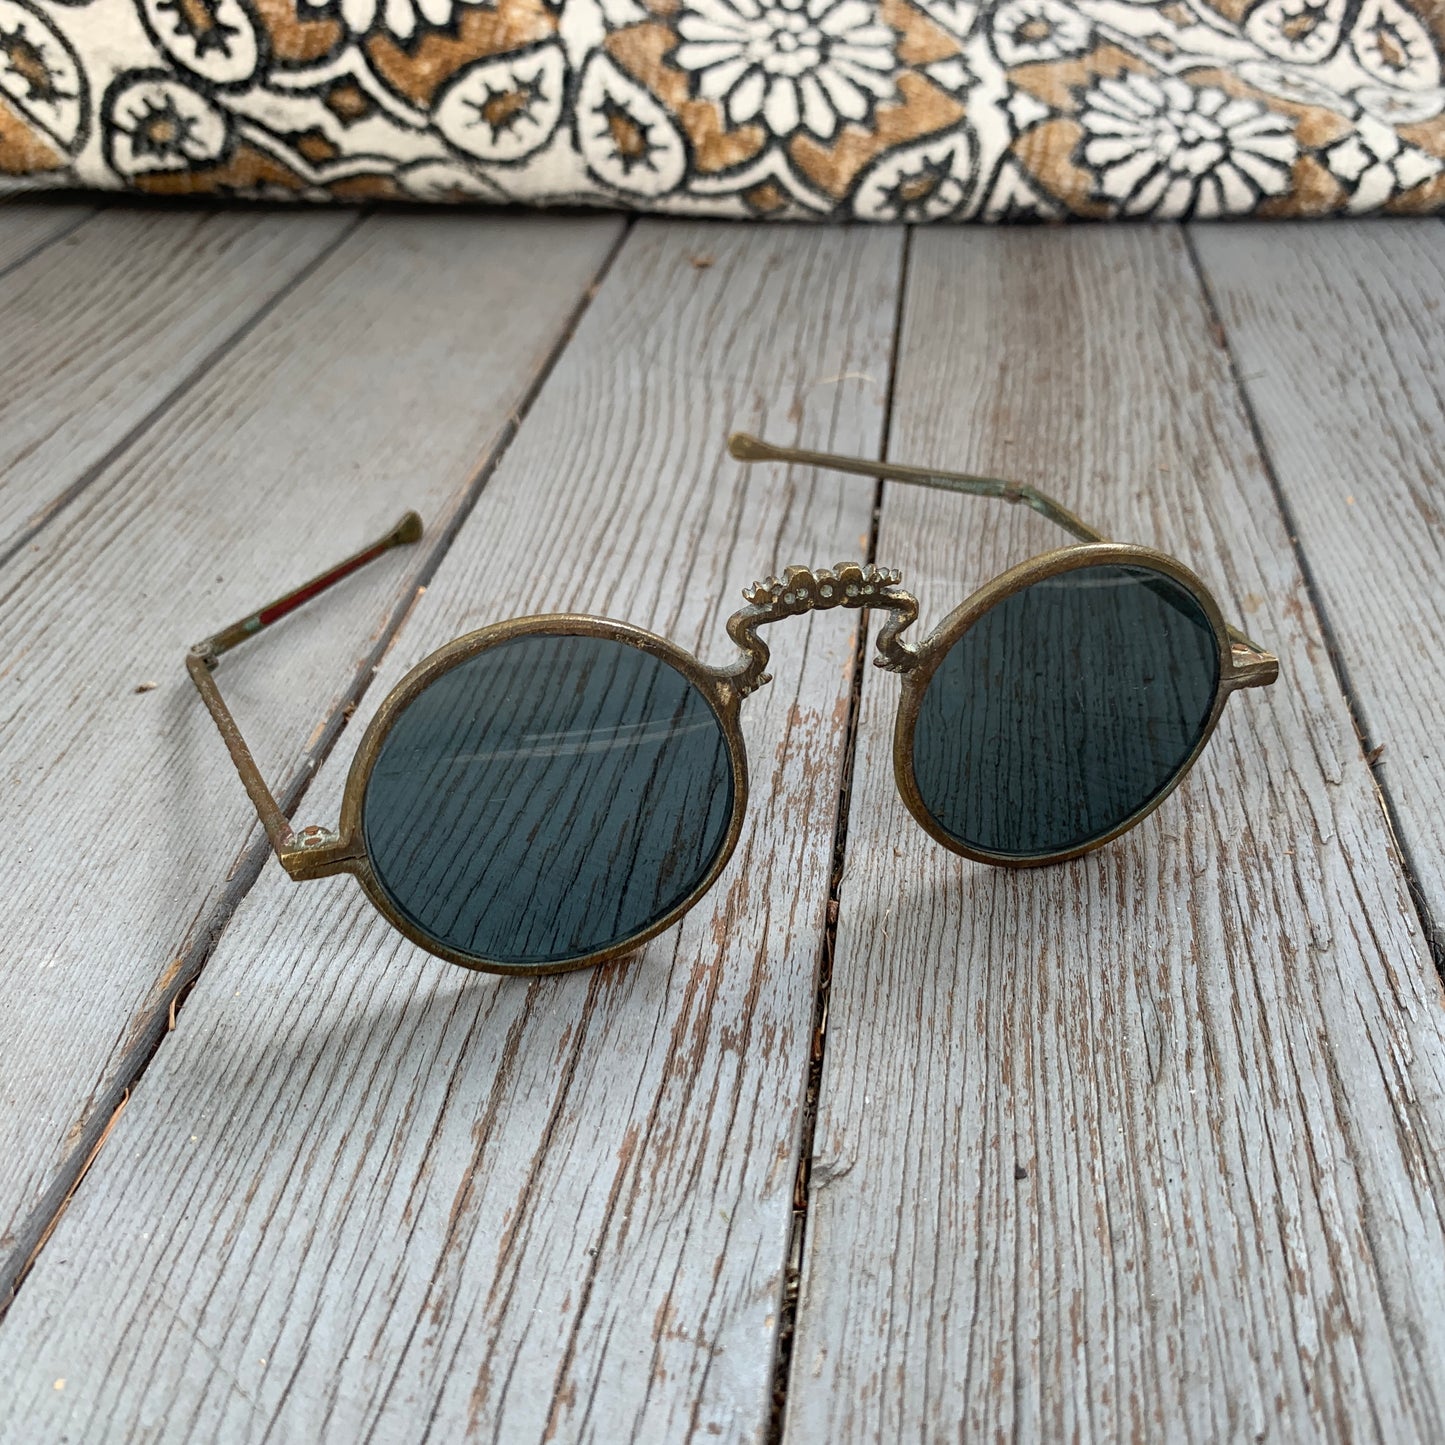 Antique Chinese Sunglasses 19th c.